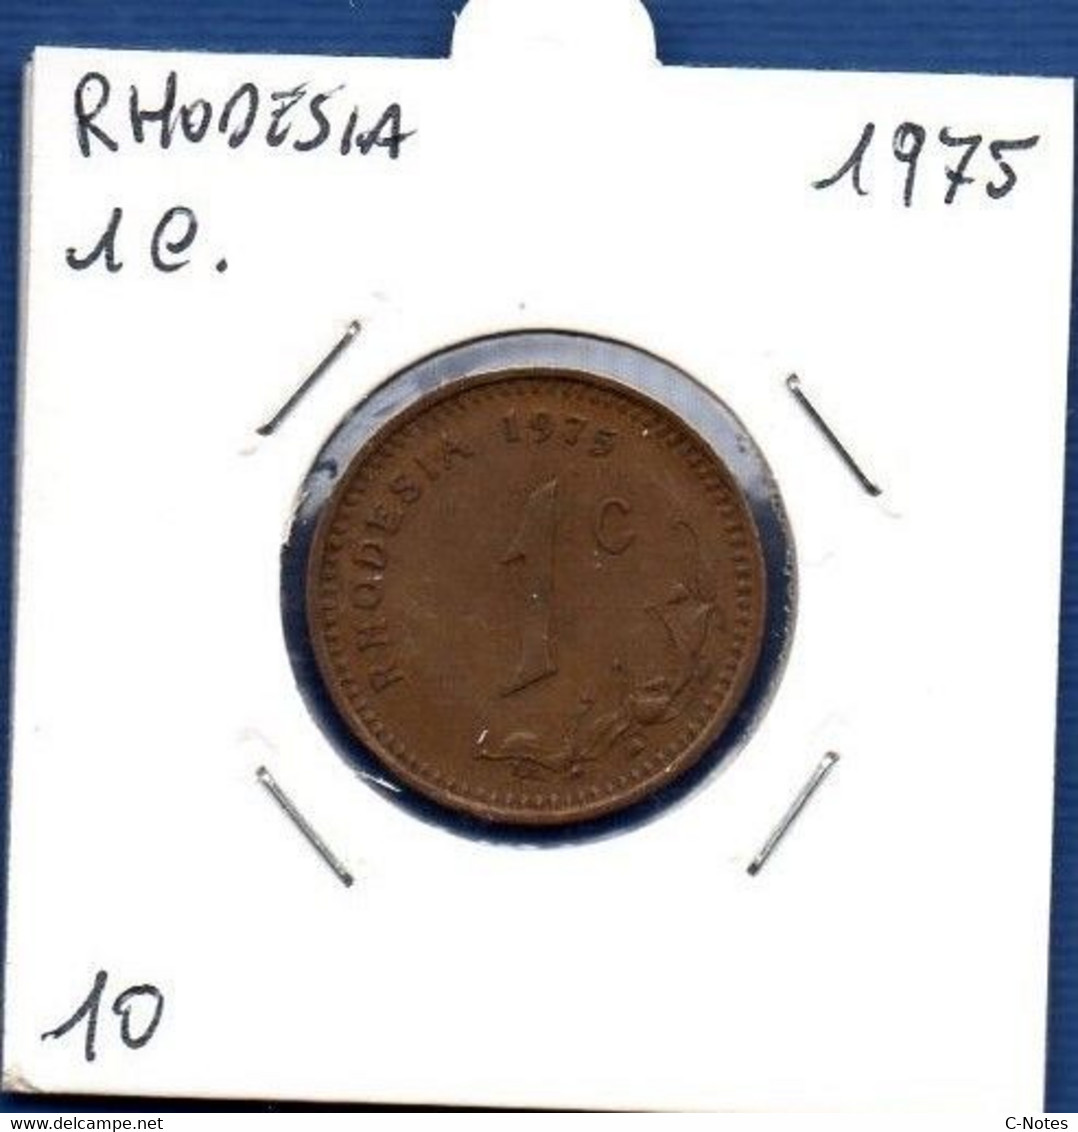 RHODESIA - 1 Cent 1973  -  See Photos - Km 10 - Rhodesia